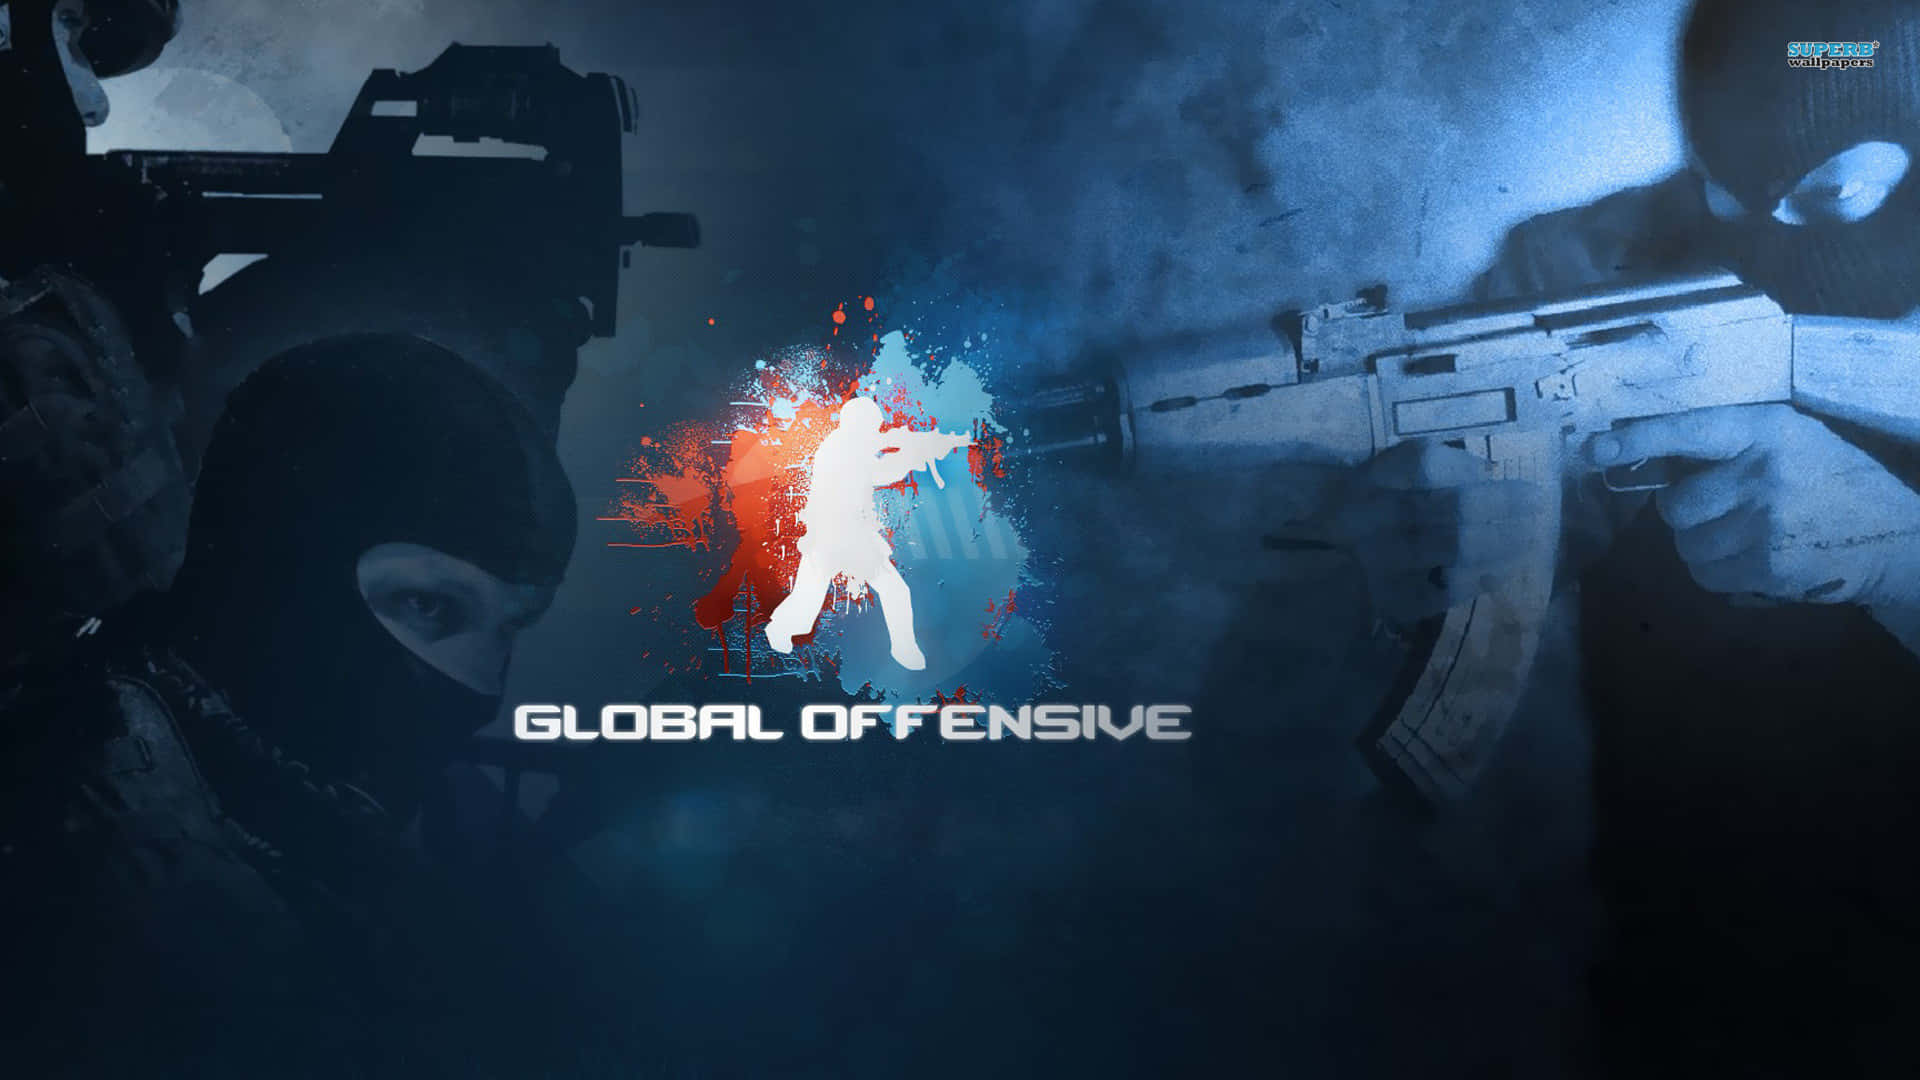 Fondode Pantalla De Counter Strike Global Offensive En Silueta Azul De 1080p